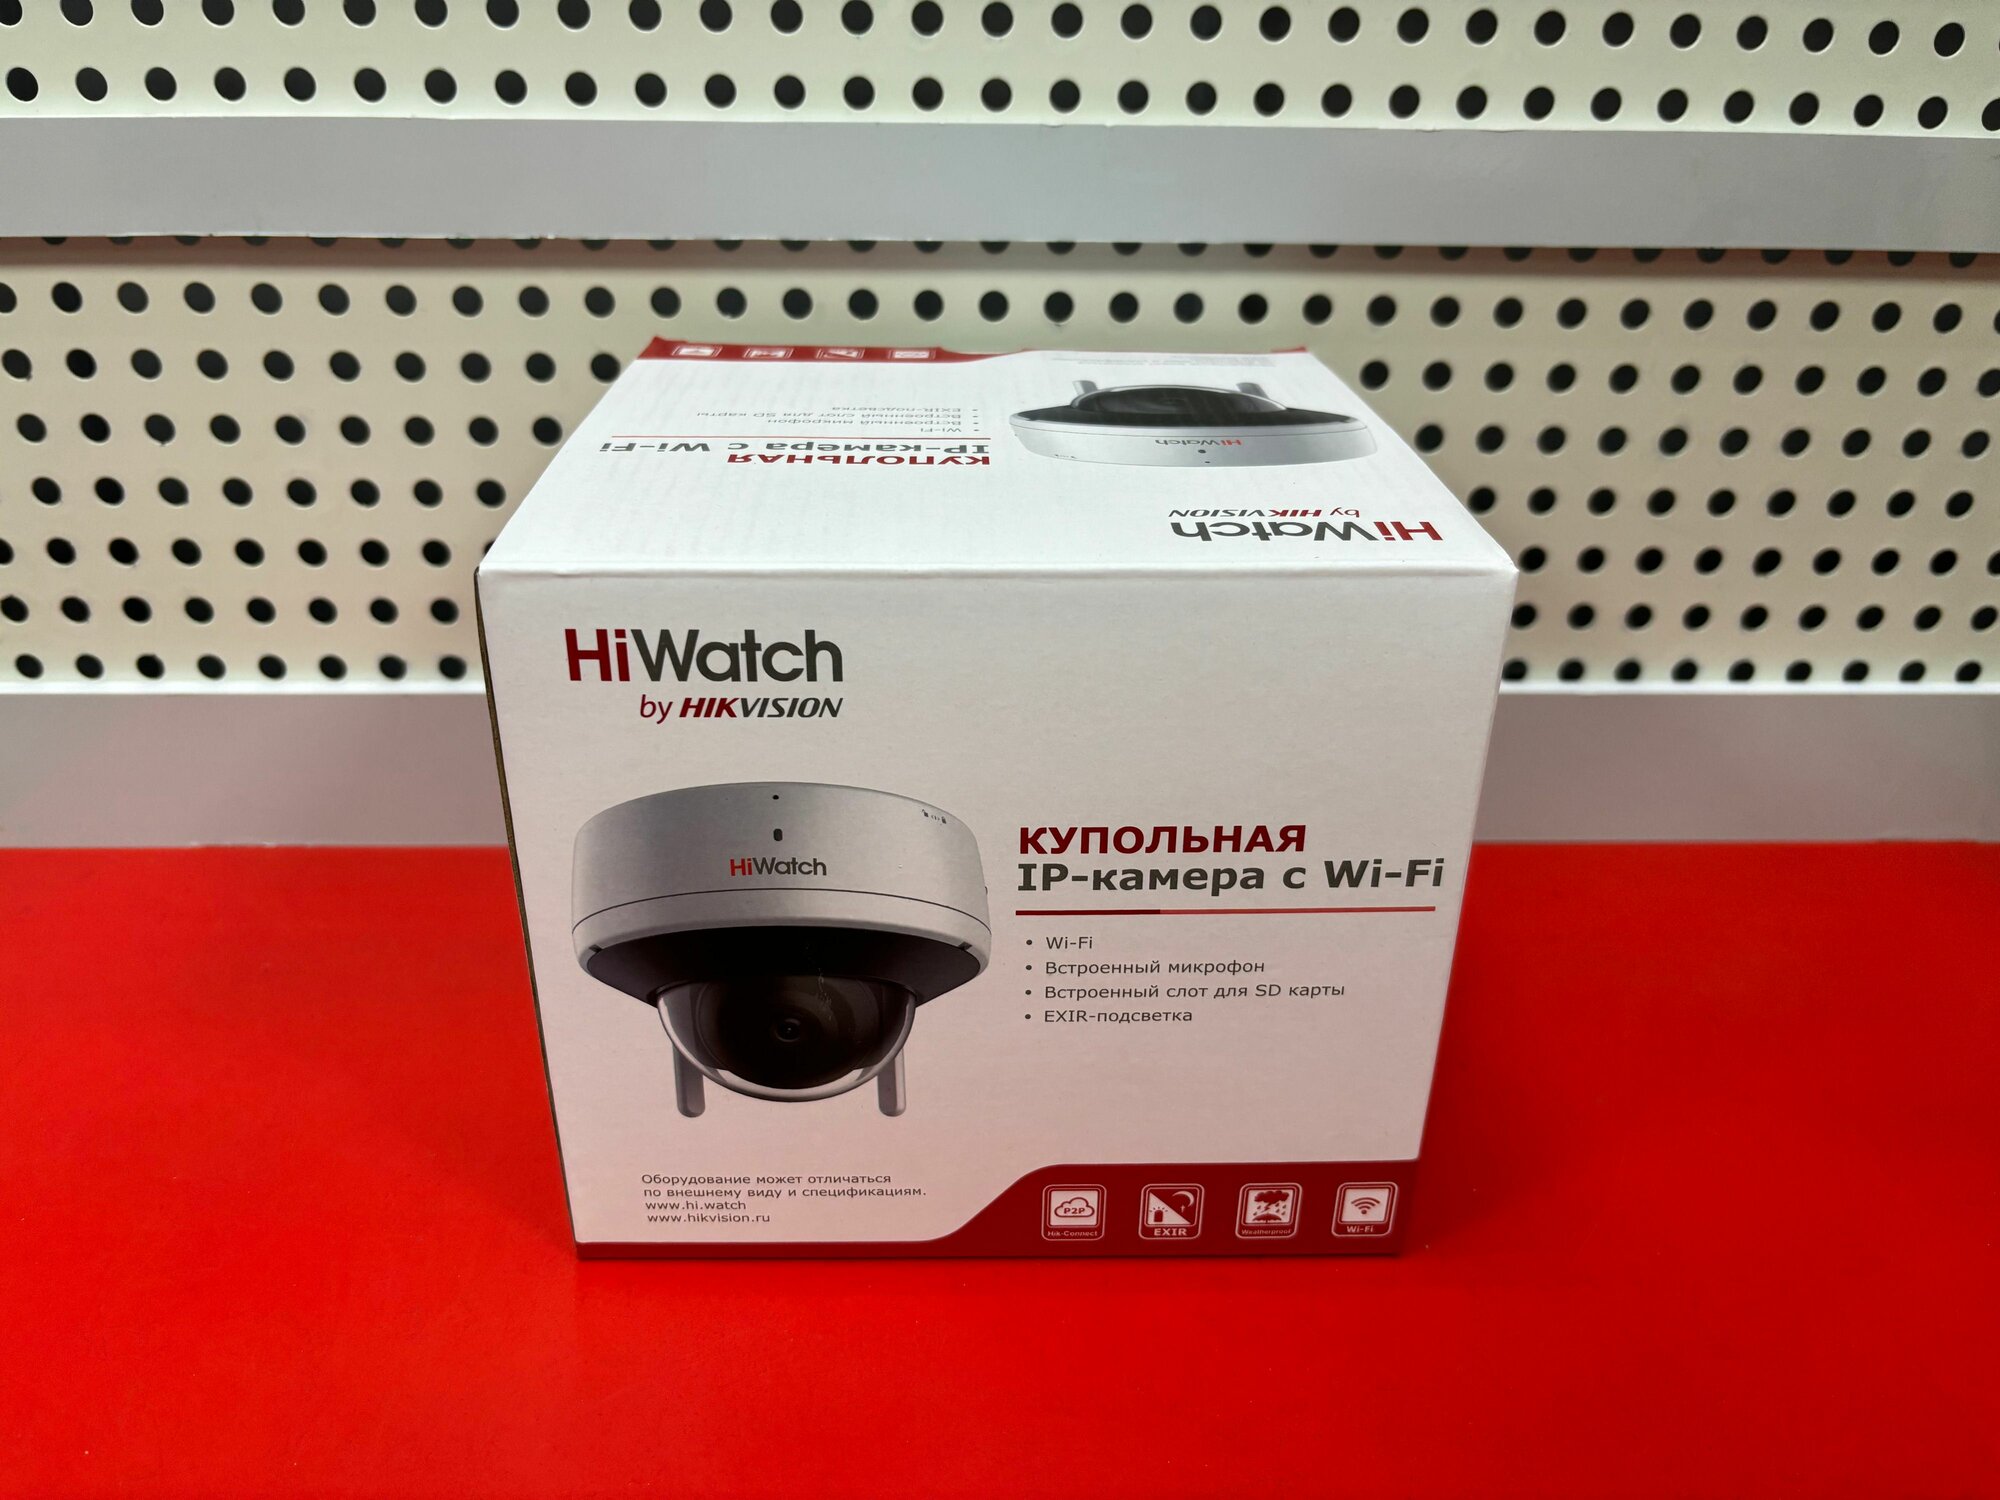 DS-I252W(D)(2.8 mm) Hiwatch. 2Мп купольная IP-камера c EXIR-подсветкой до 30м и WiFi